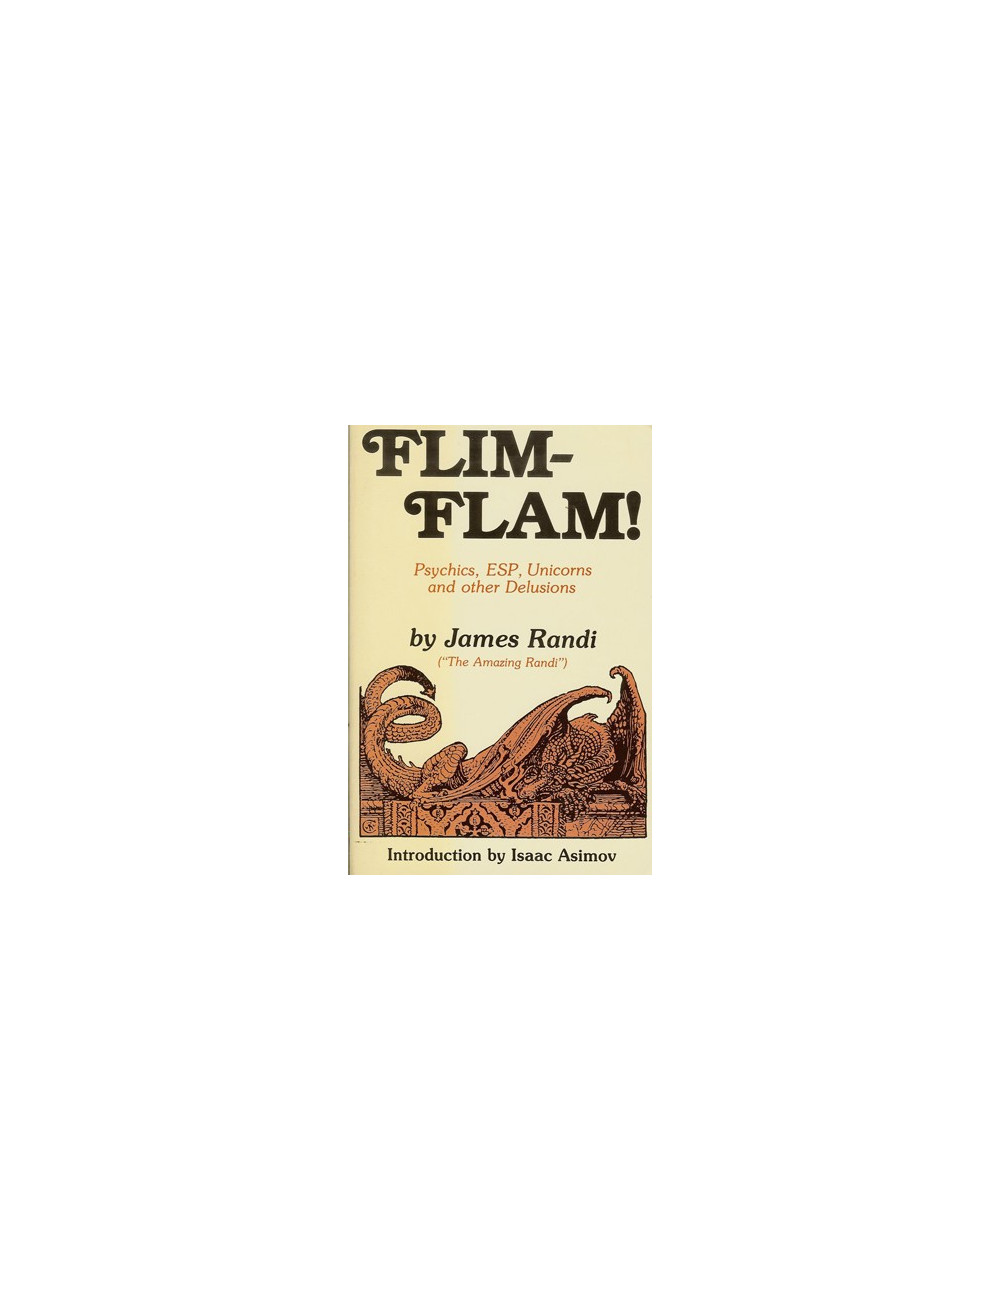 FLIM-FLAM! (James Randi)